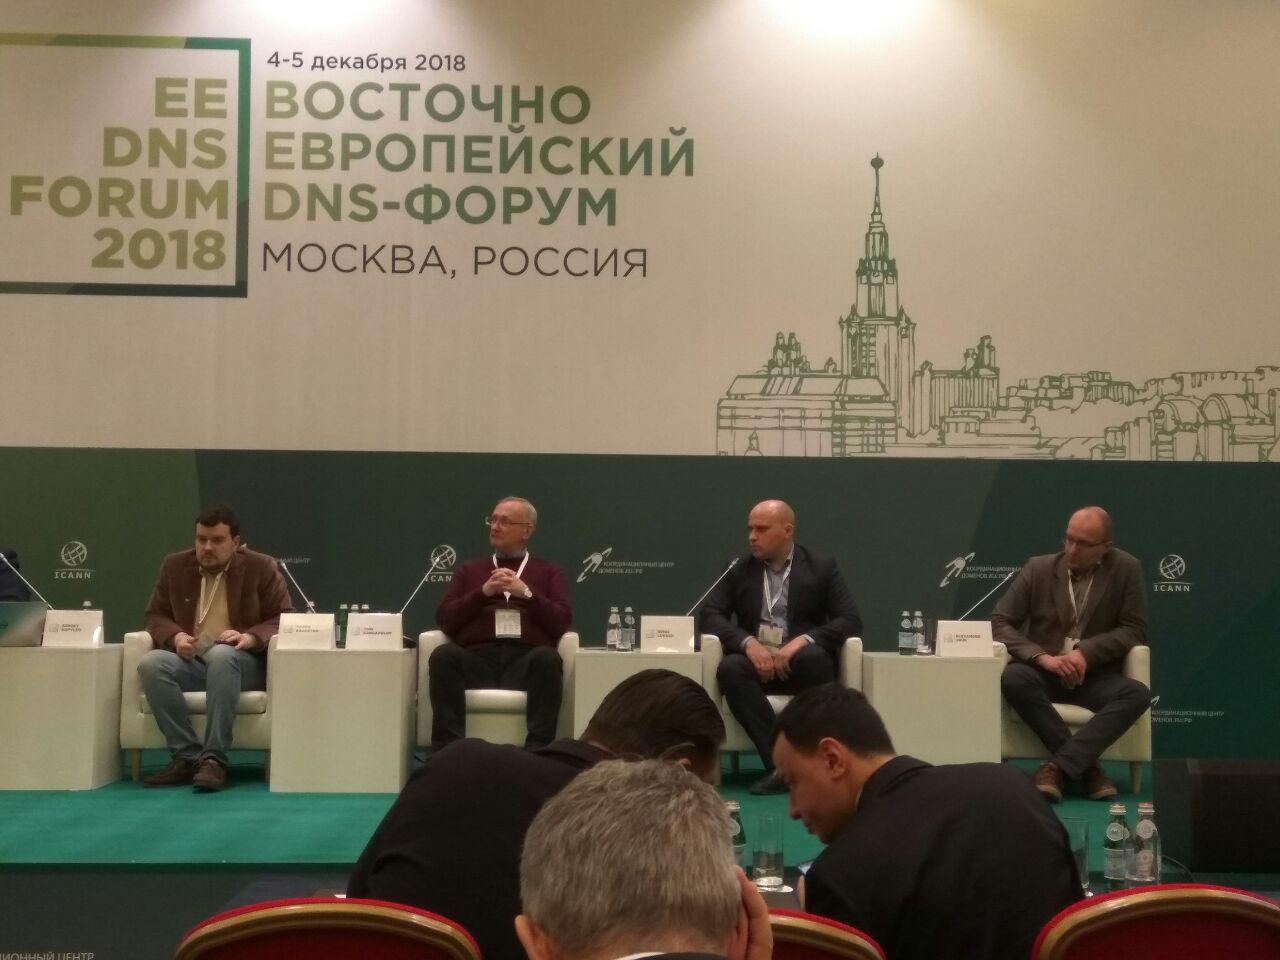 Денис Лукаш выступил на Восточноевропейском DNS-форуме в Москве